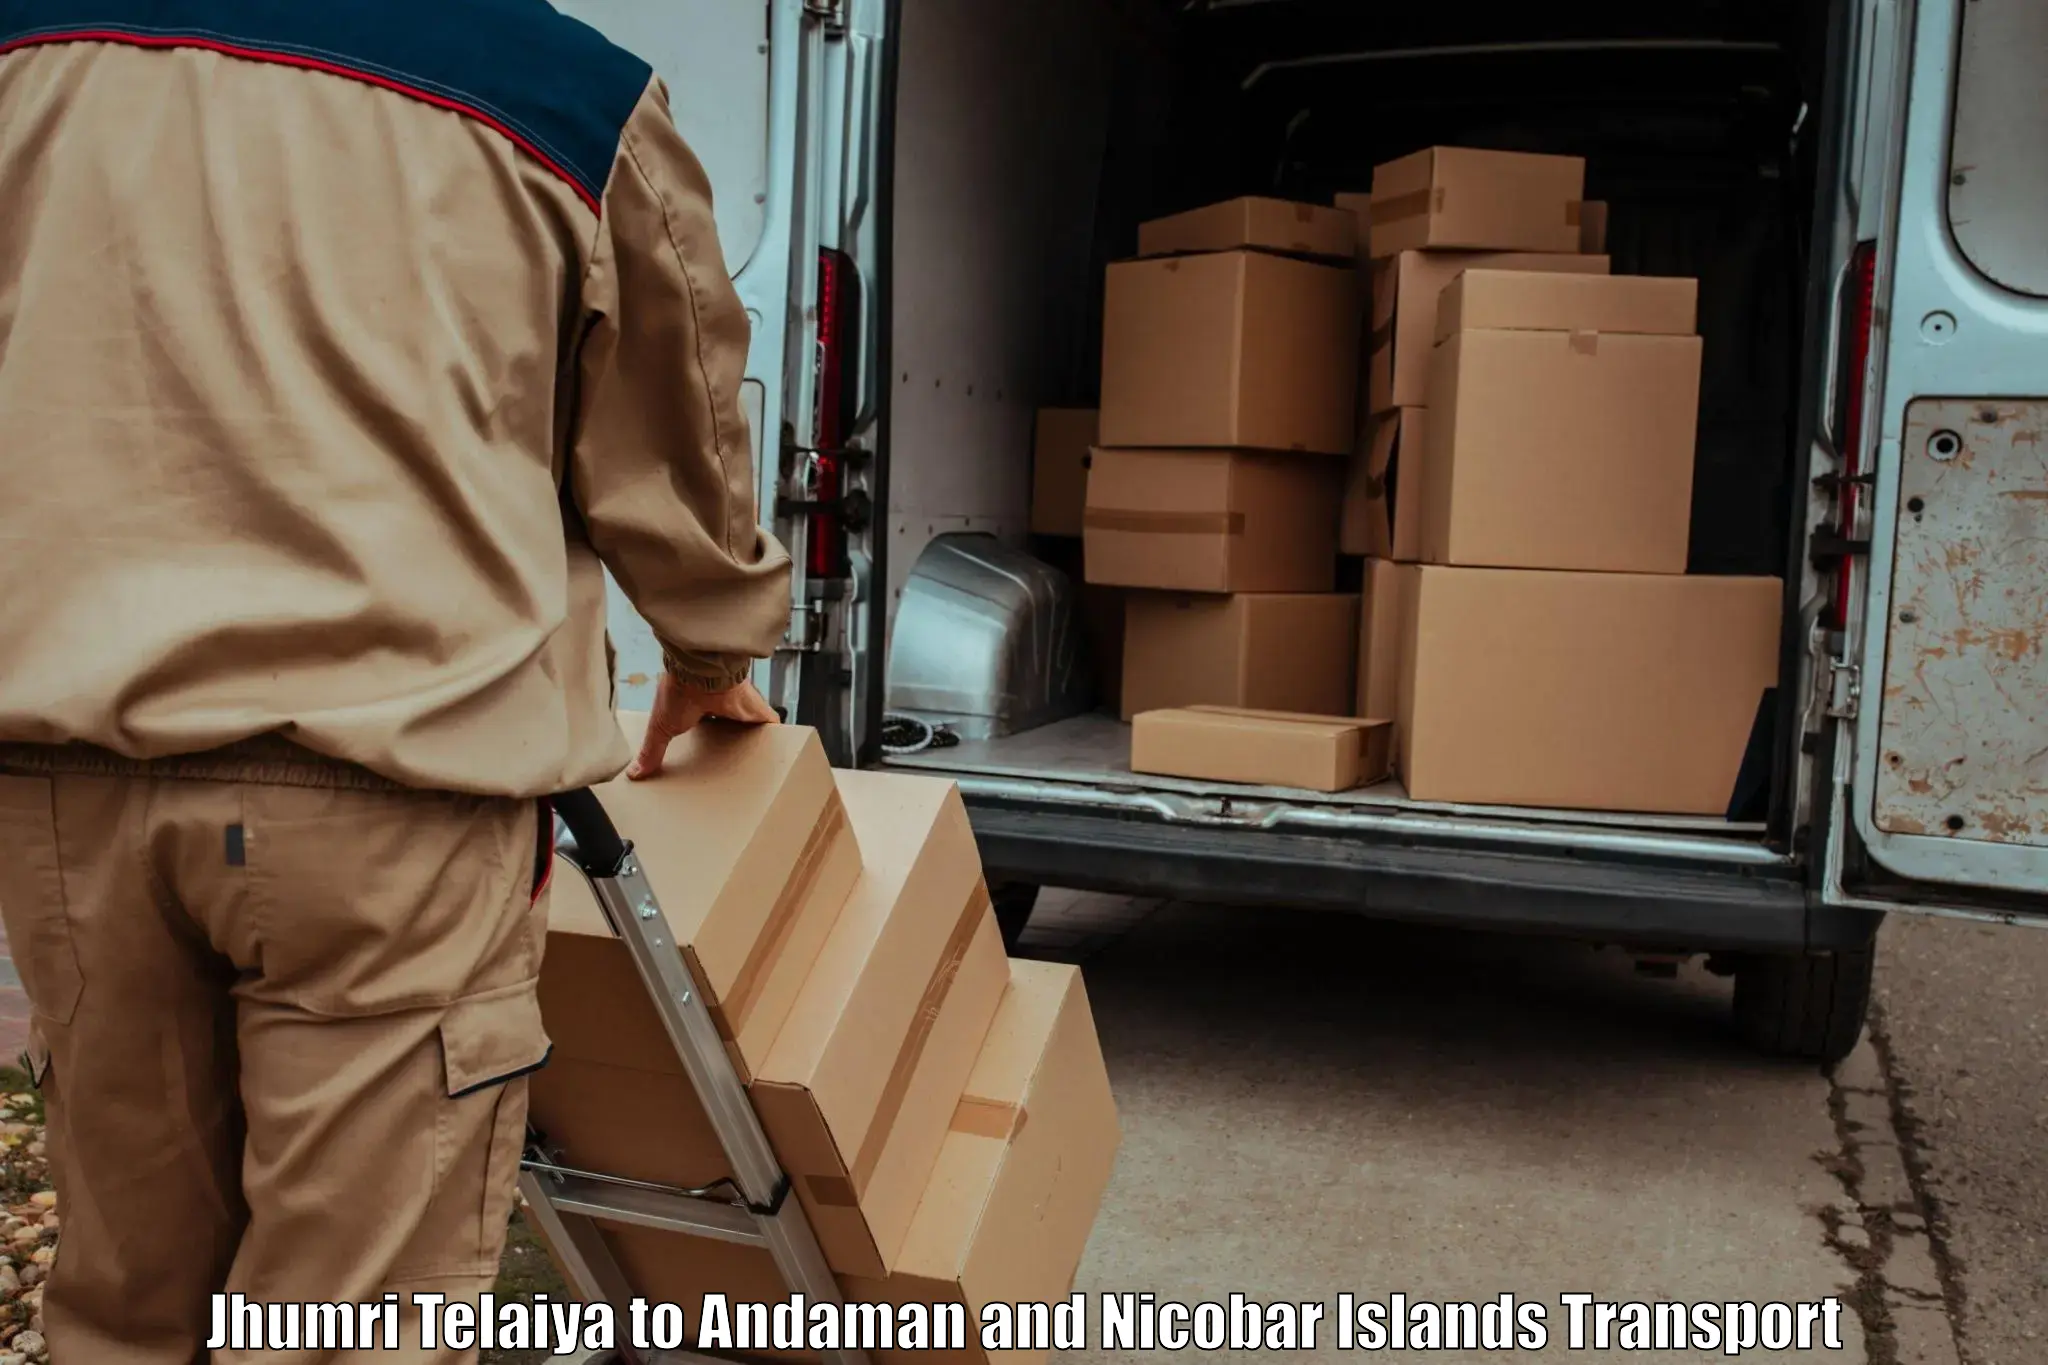 Truck transport companies in India Jhumri Telaiya to Andaman and Nicobar Islands